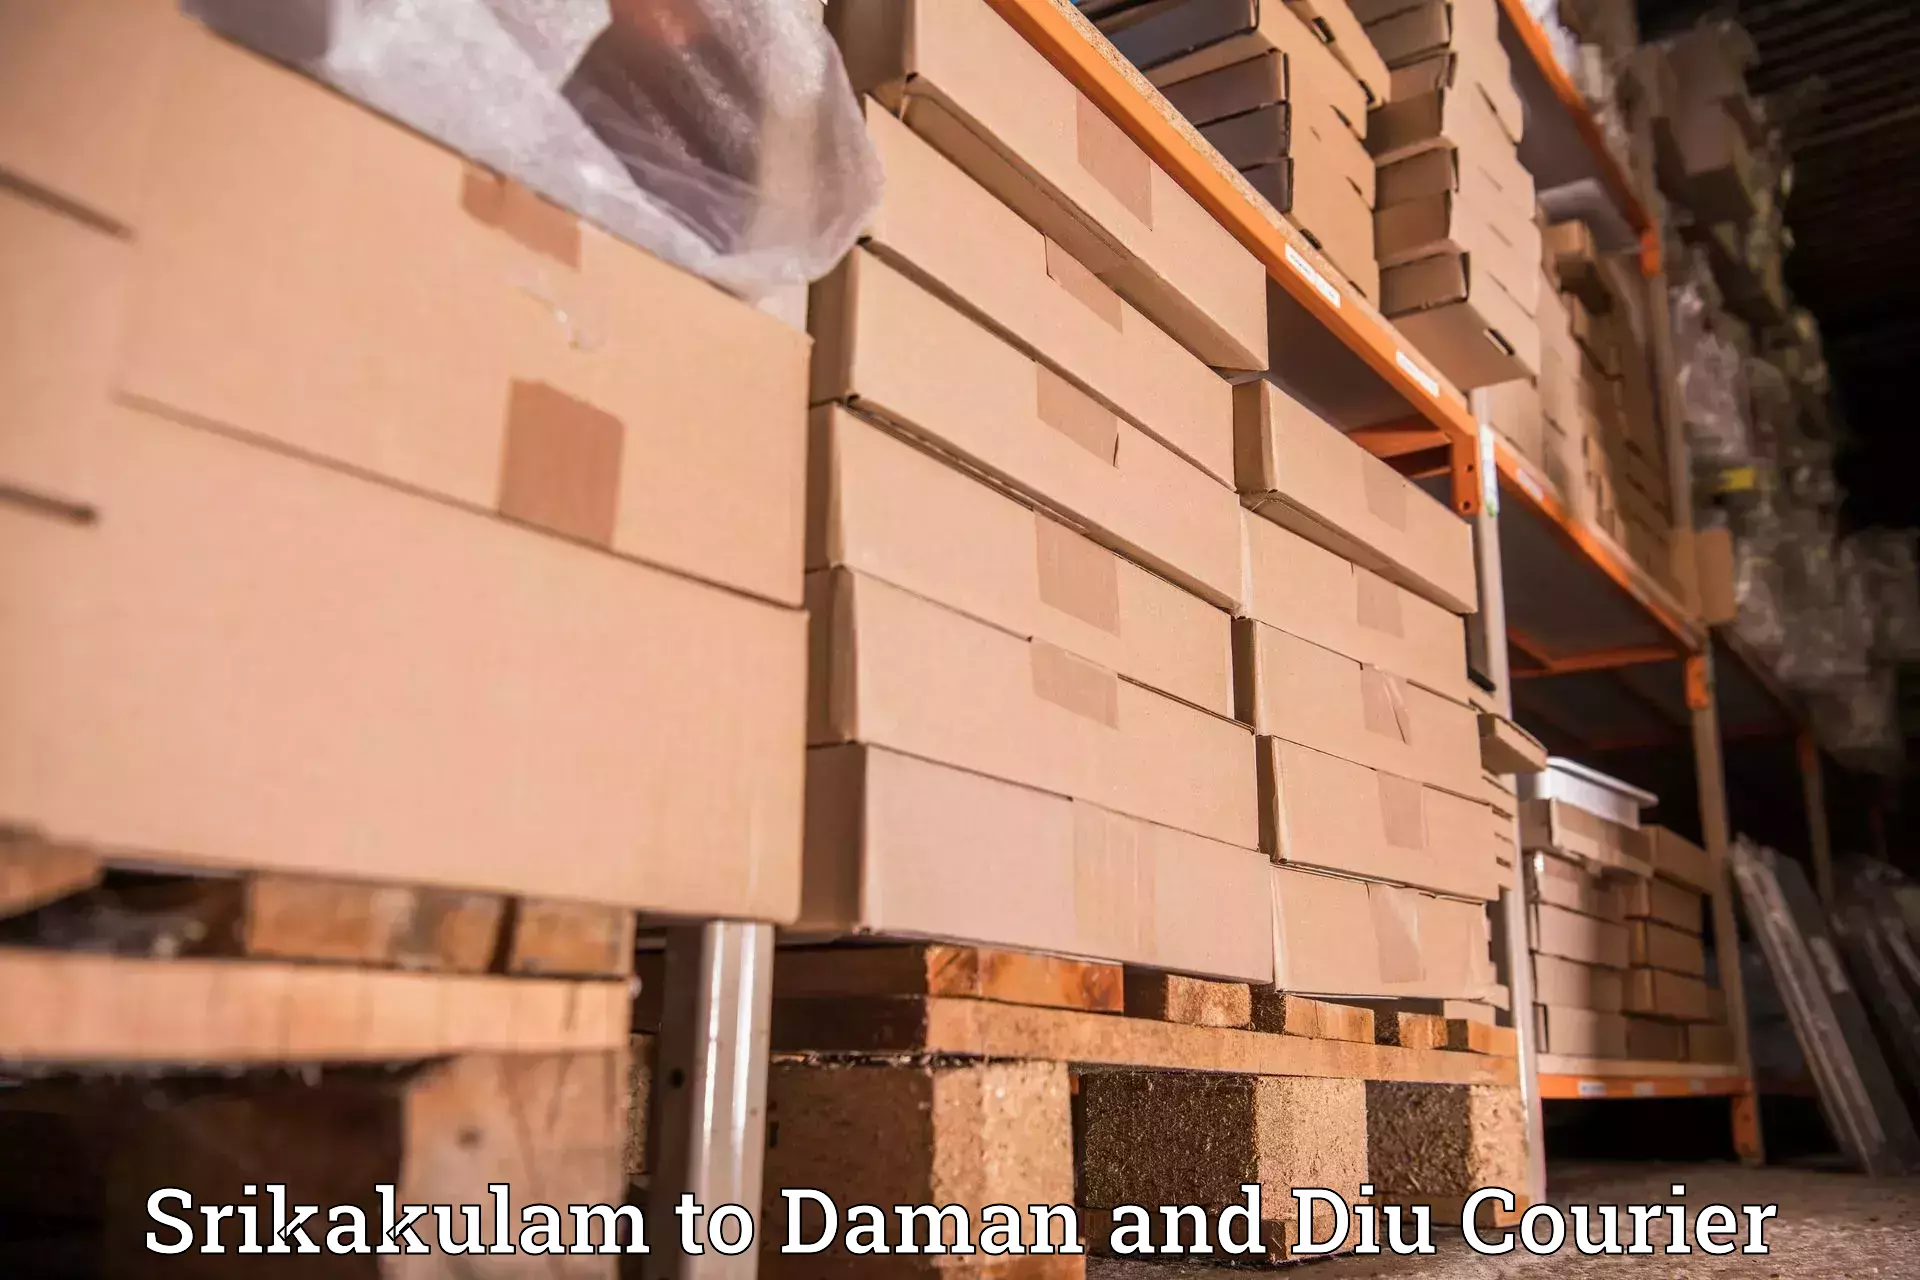 Next-day freight services Srikakulam to Daman and Diu